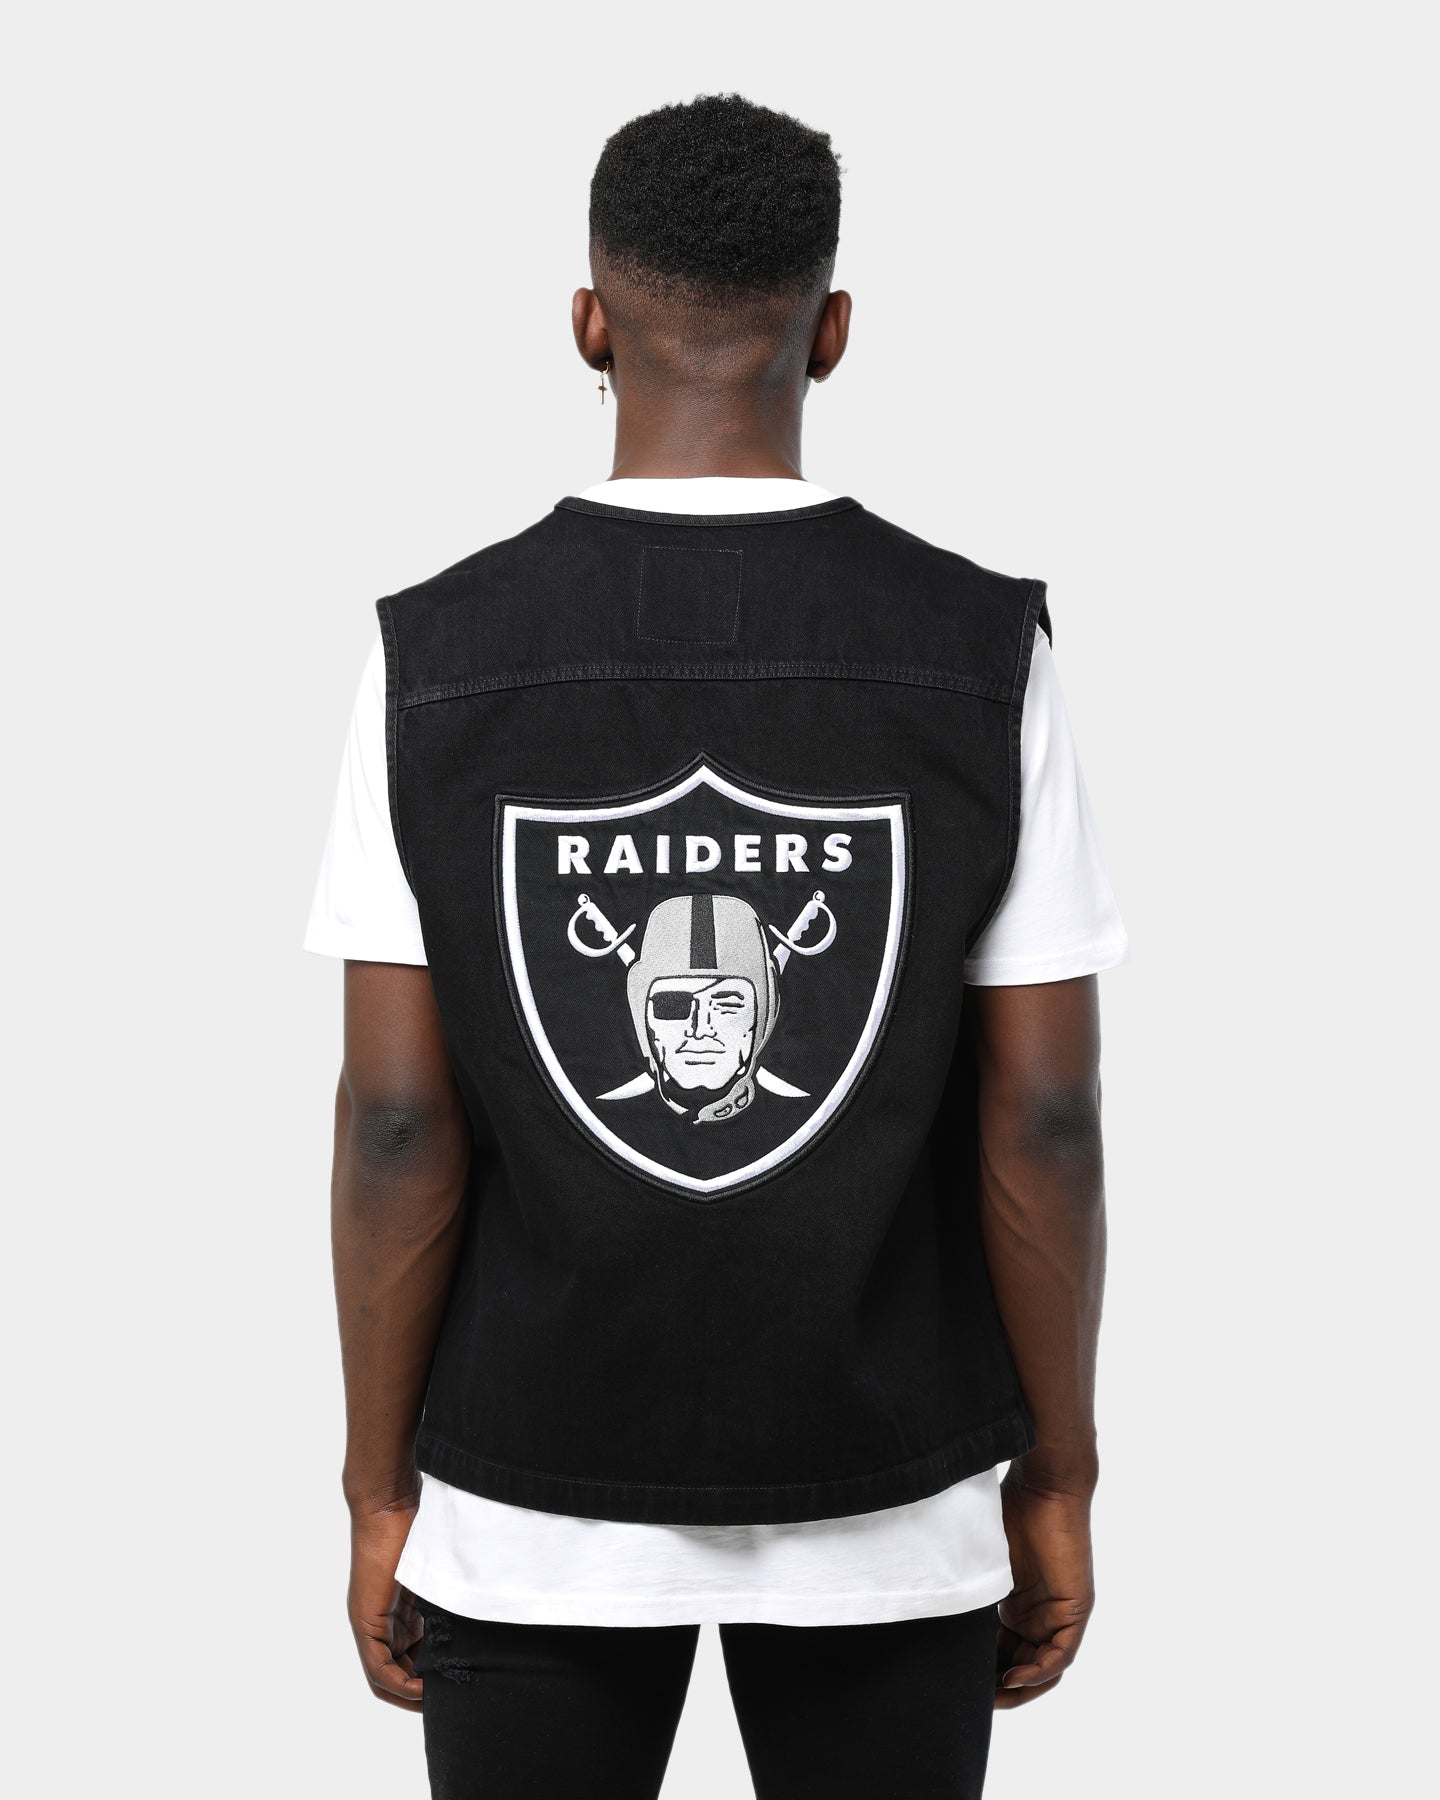 raiders supreme jacket